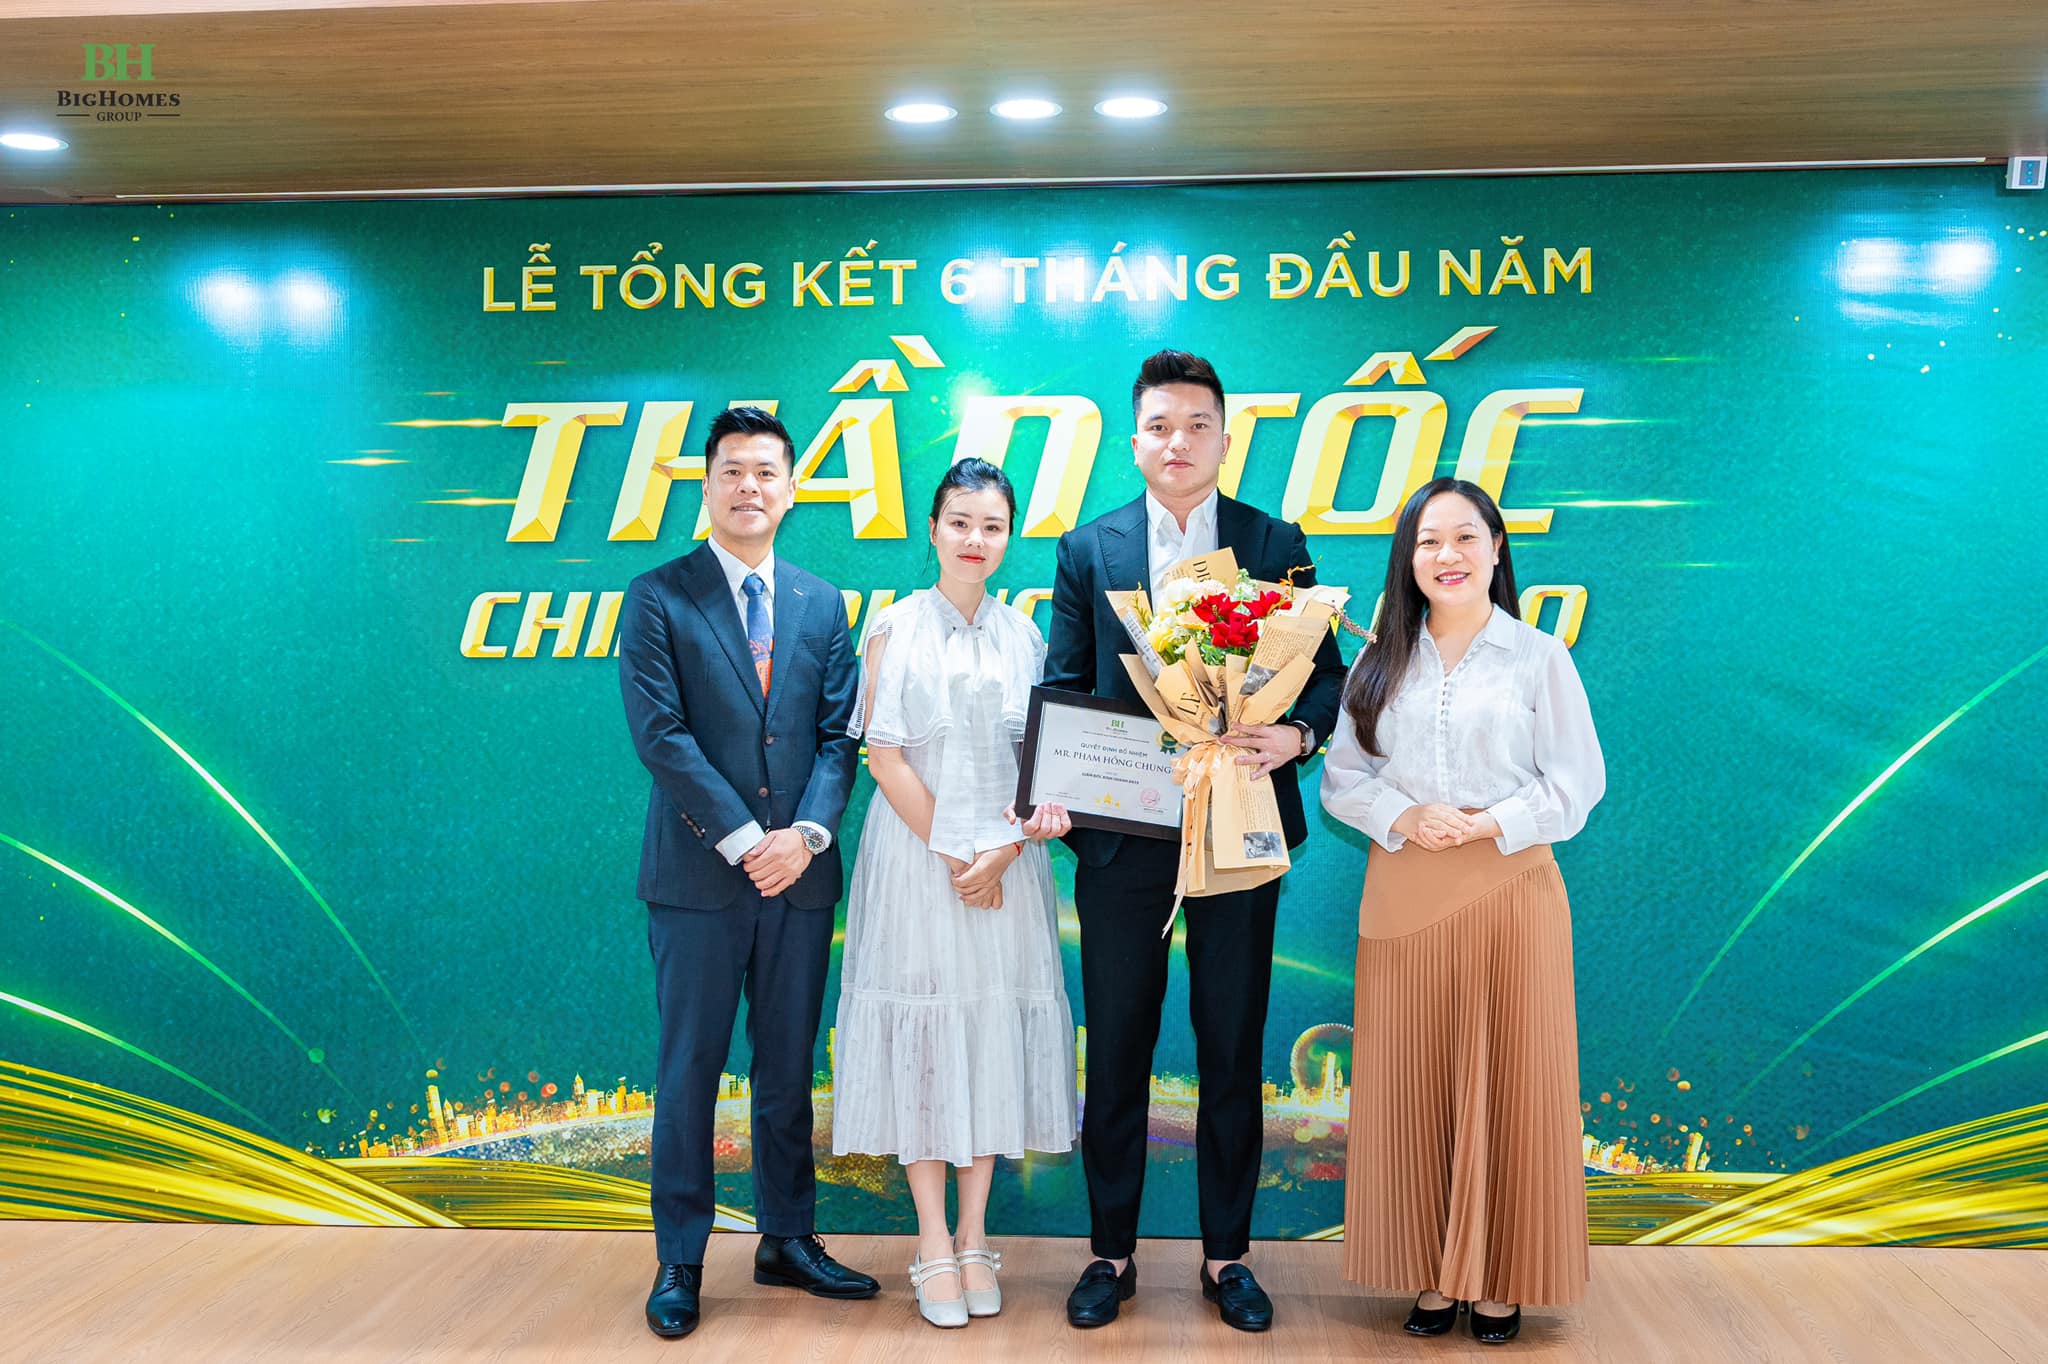 Anh Phạm Hồng Chung được bổ nhiệm giữ chức vụ Giám đốc Kinh doanh BH35